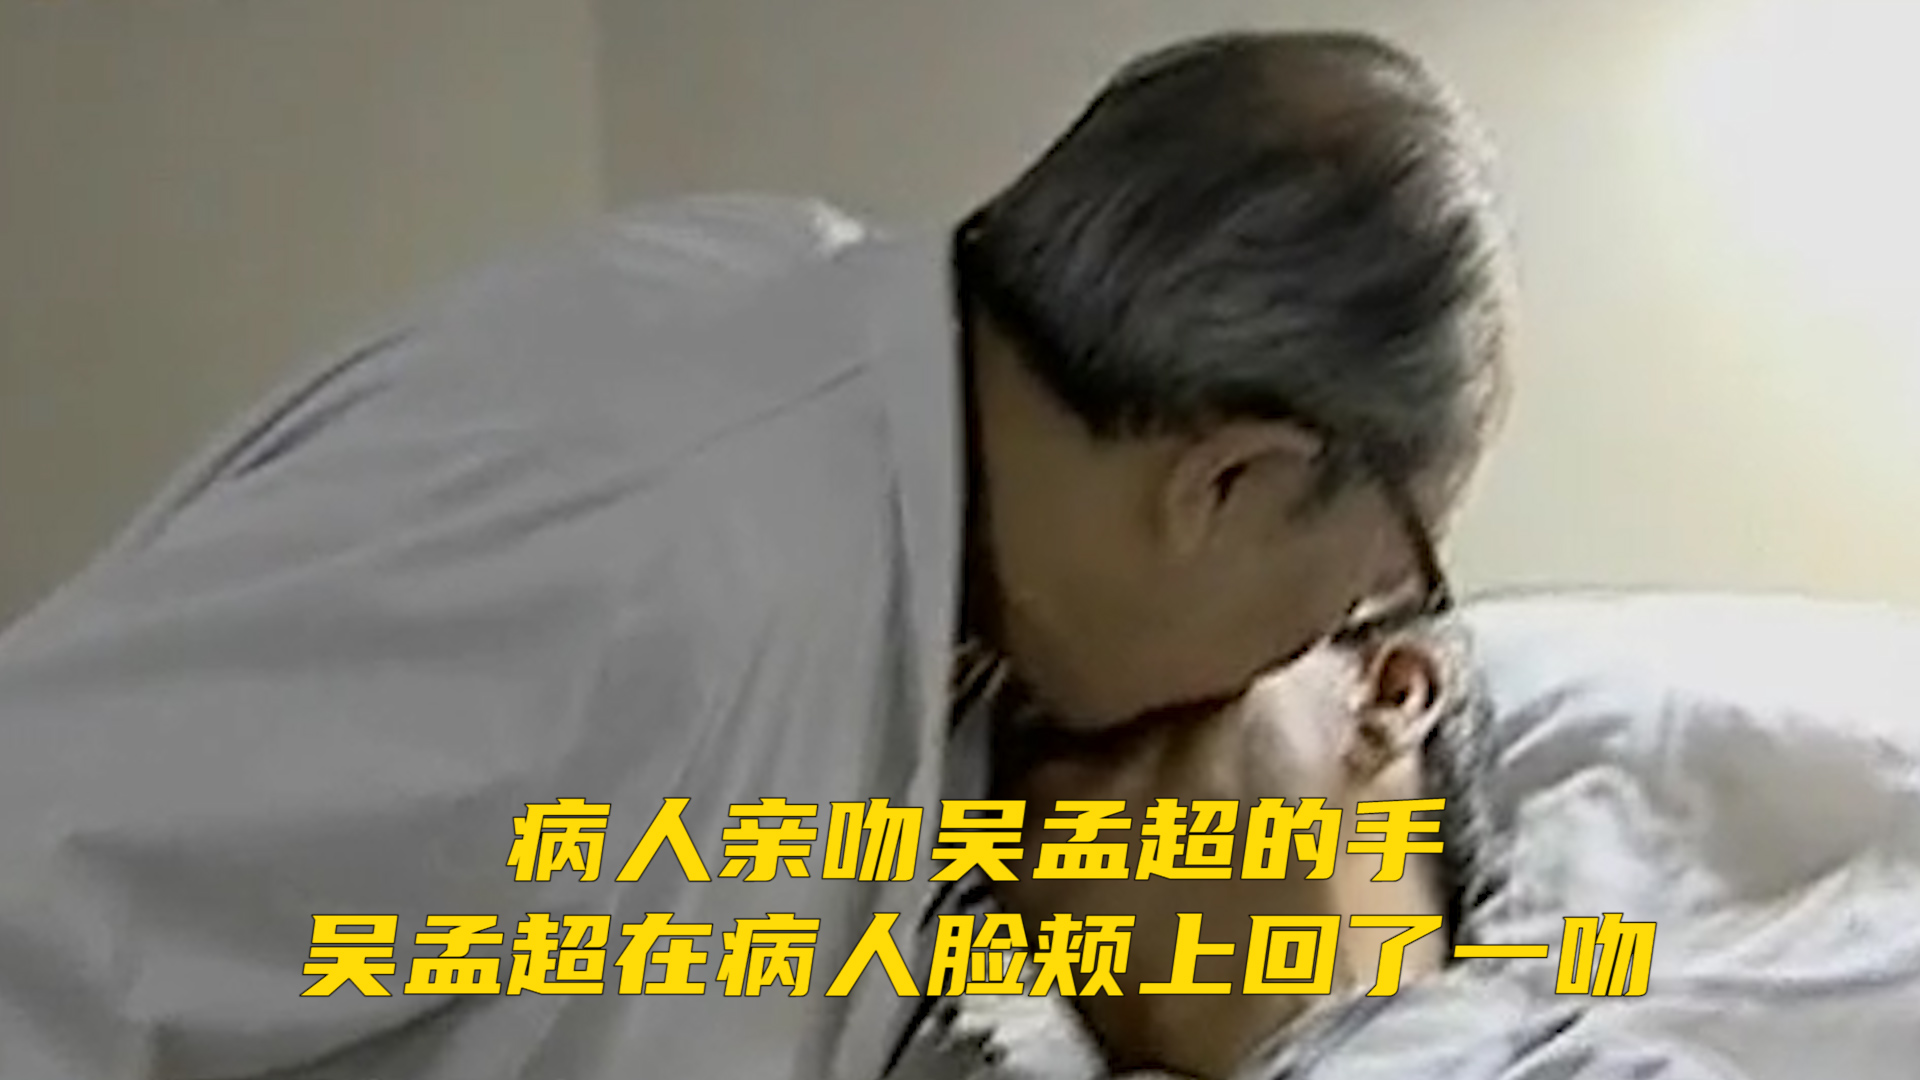 病人亲吻吴孟超的手，吴孟超在病人脸颊上回了一吻。医者仁心，唯有不竭的爱，能照亮一个受苦的灵魂